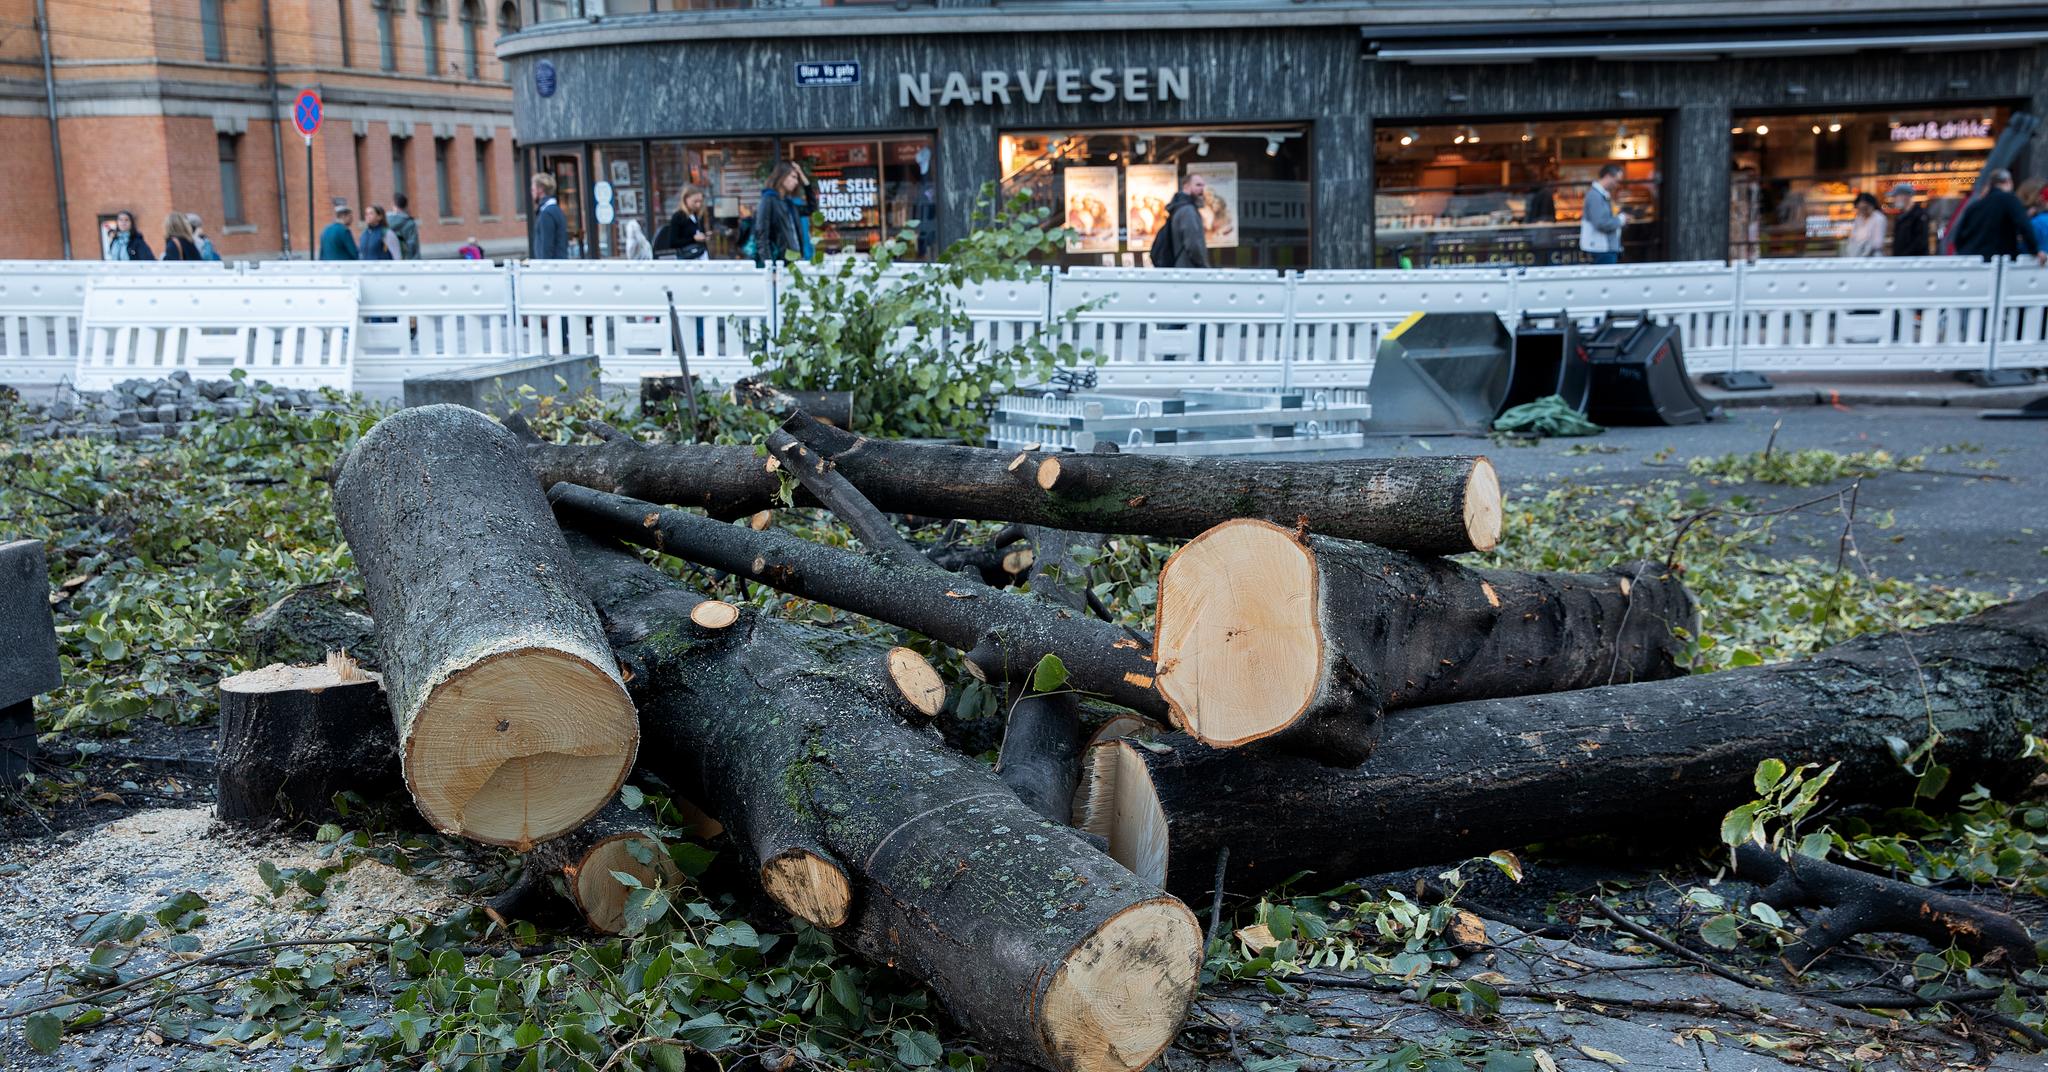 Tirsdag ble det felt 14 trær i Olav Vs gate, mellom Nationaltheatret og Rådhusplassen i Oslo sentrum. Årsaken er oppgradering av gaten. 